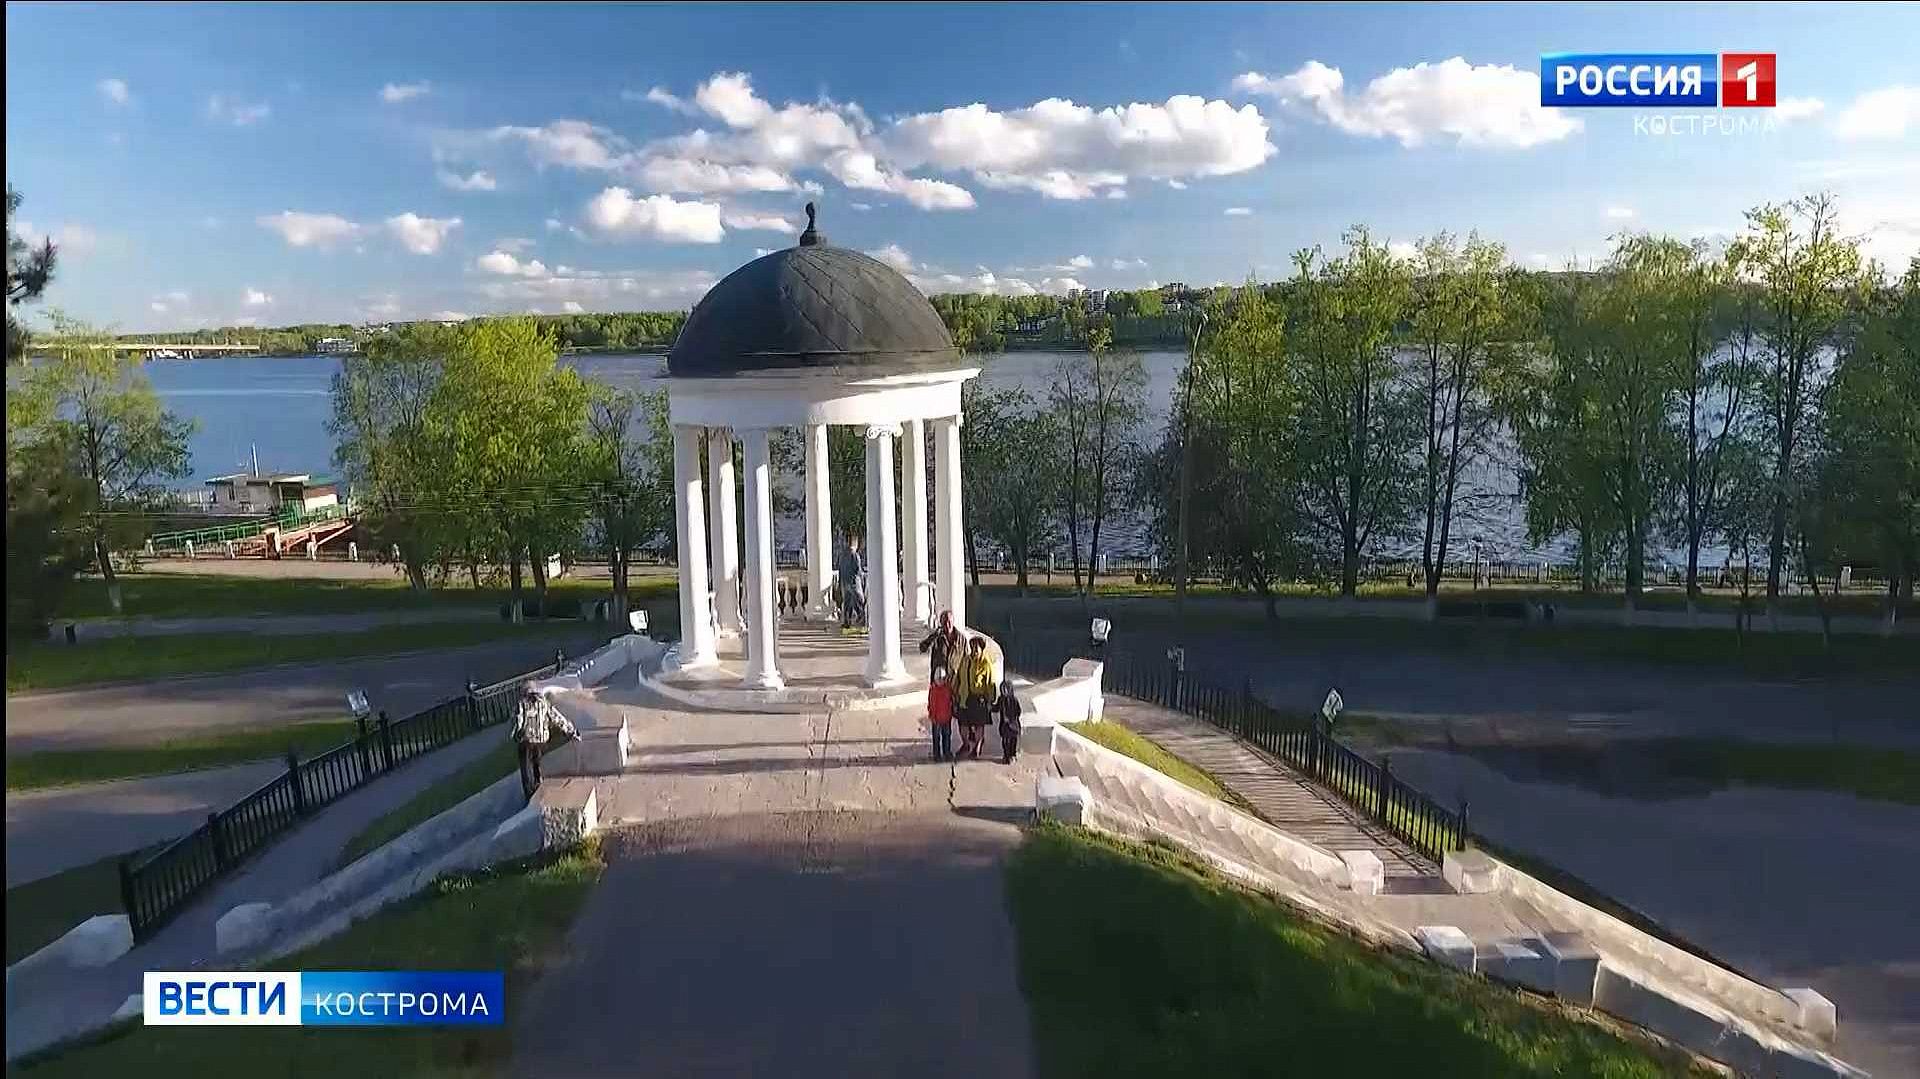 Новые открытия и пополнение казны: чего ждут в Костроме от кешбэк-туризма?